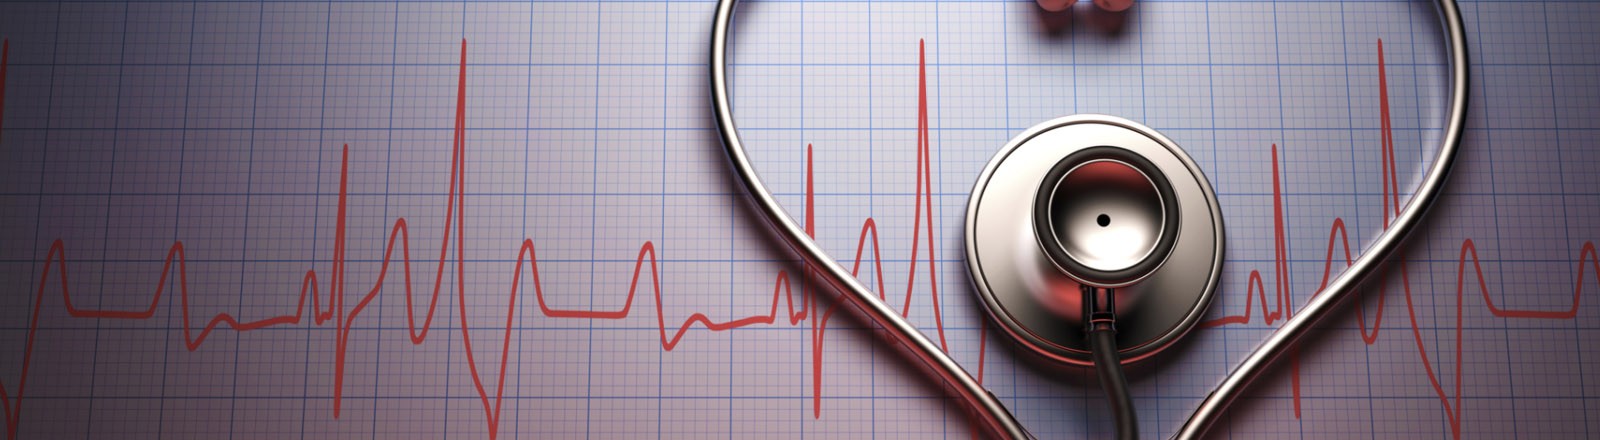 La Rehabilitación Cardiovascular en la Cardiopatía Isquémica… un tratamiento subutilizado?